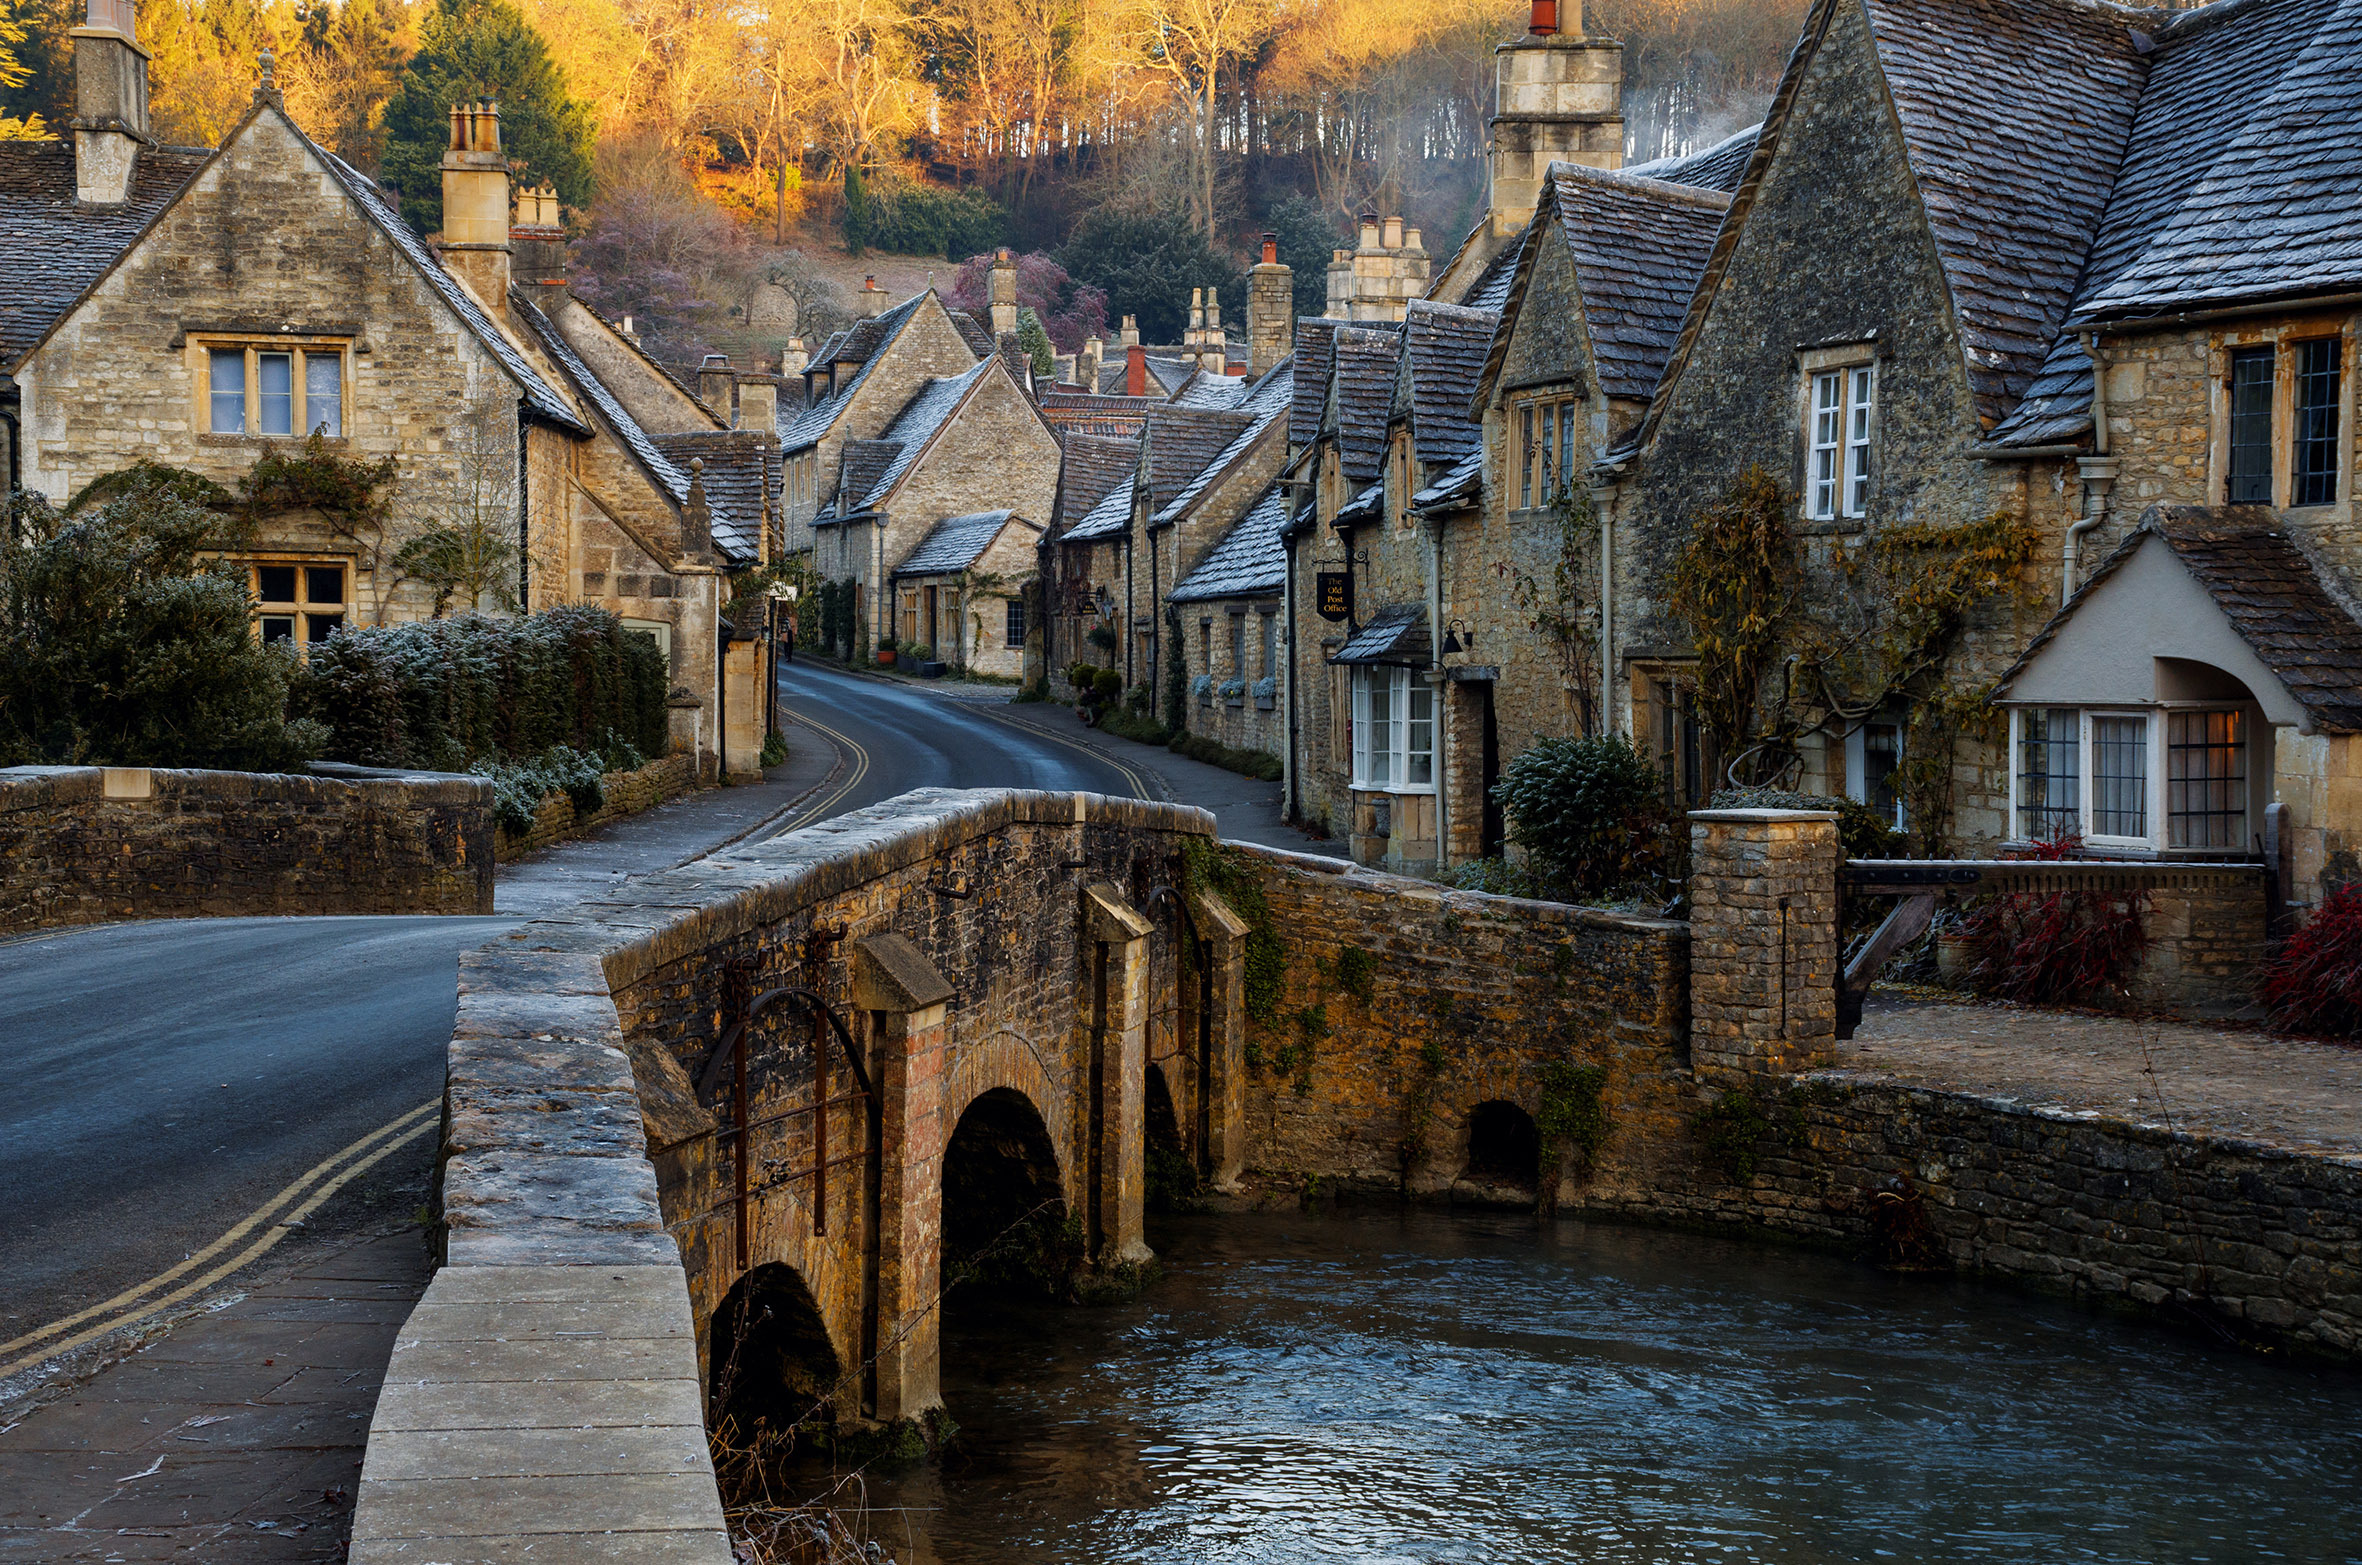 Du ngoạn miền quê nước Anh, ngắm những ngôi làng cổ xinh đẹp - 6